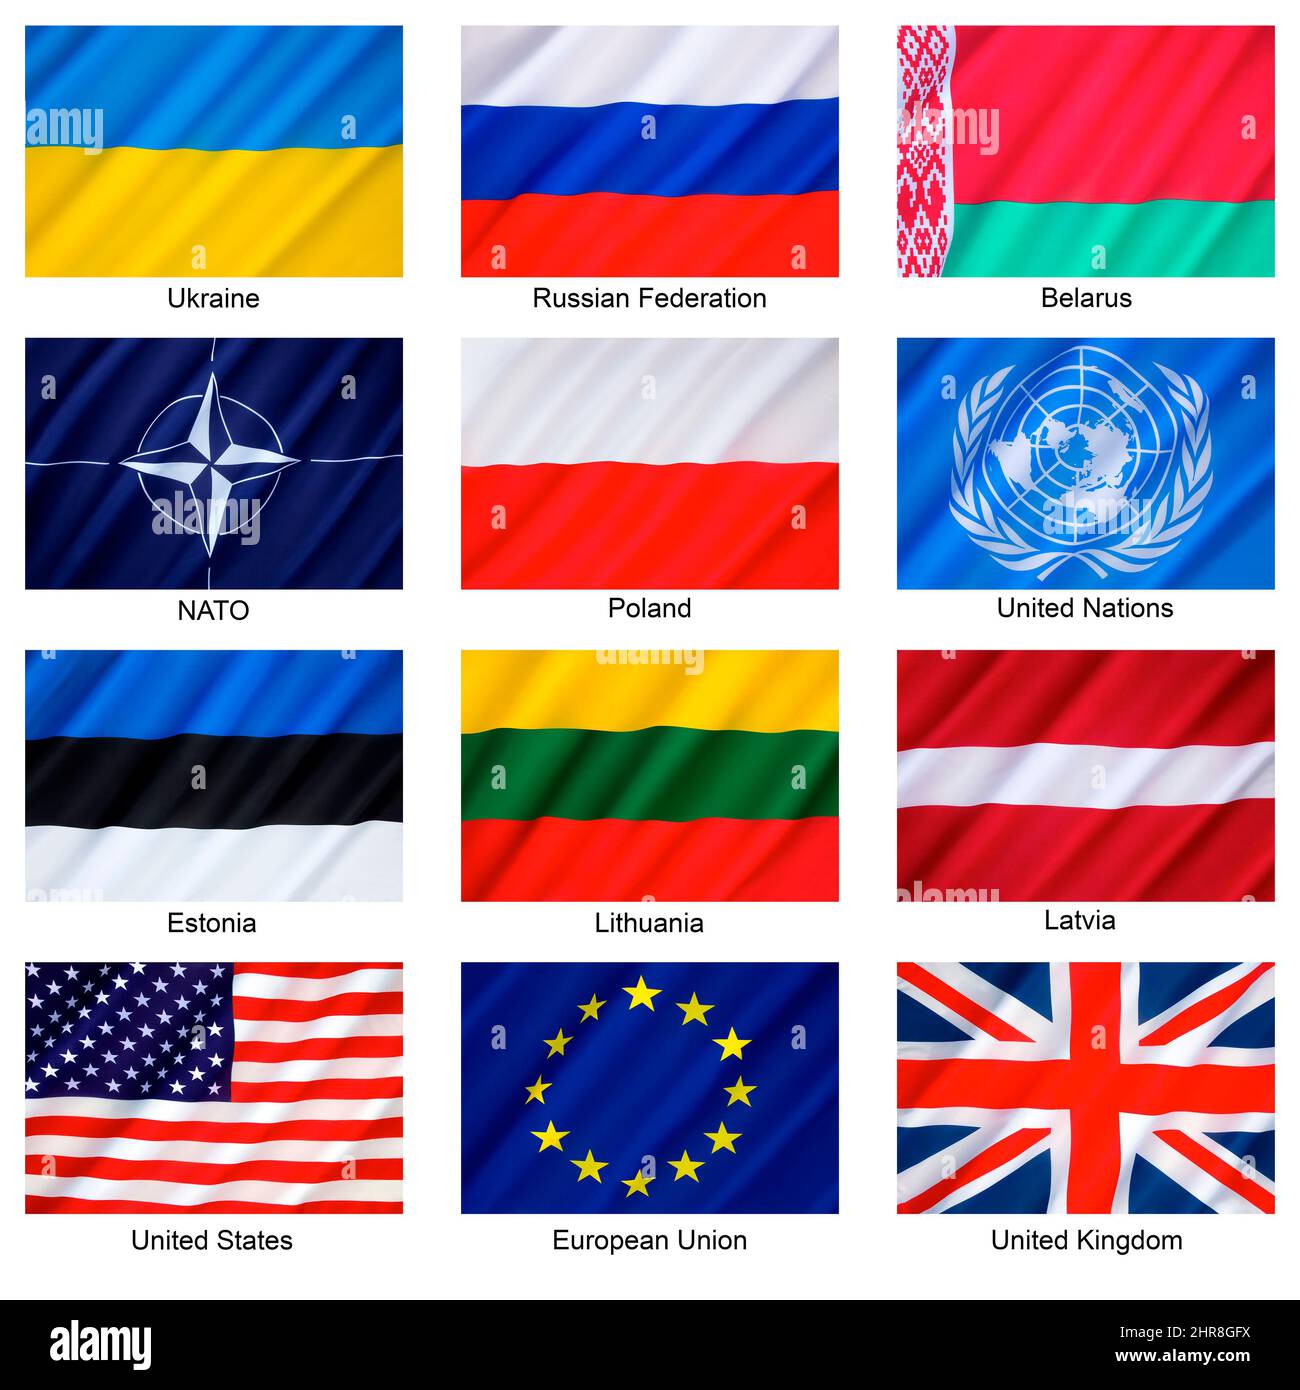 Federazione Russa - conflitto in Ucraina - Bandiere dei paesi coinvolti, degli ex Stati sovietici, delle Nazioni Unite, della NATO e delle principali nazioni occidentali - la co Foto Stock